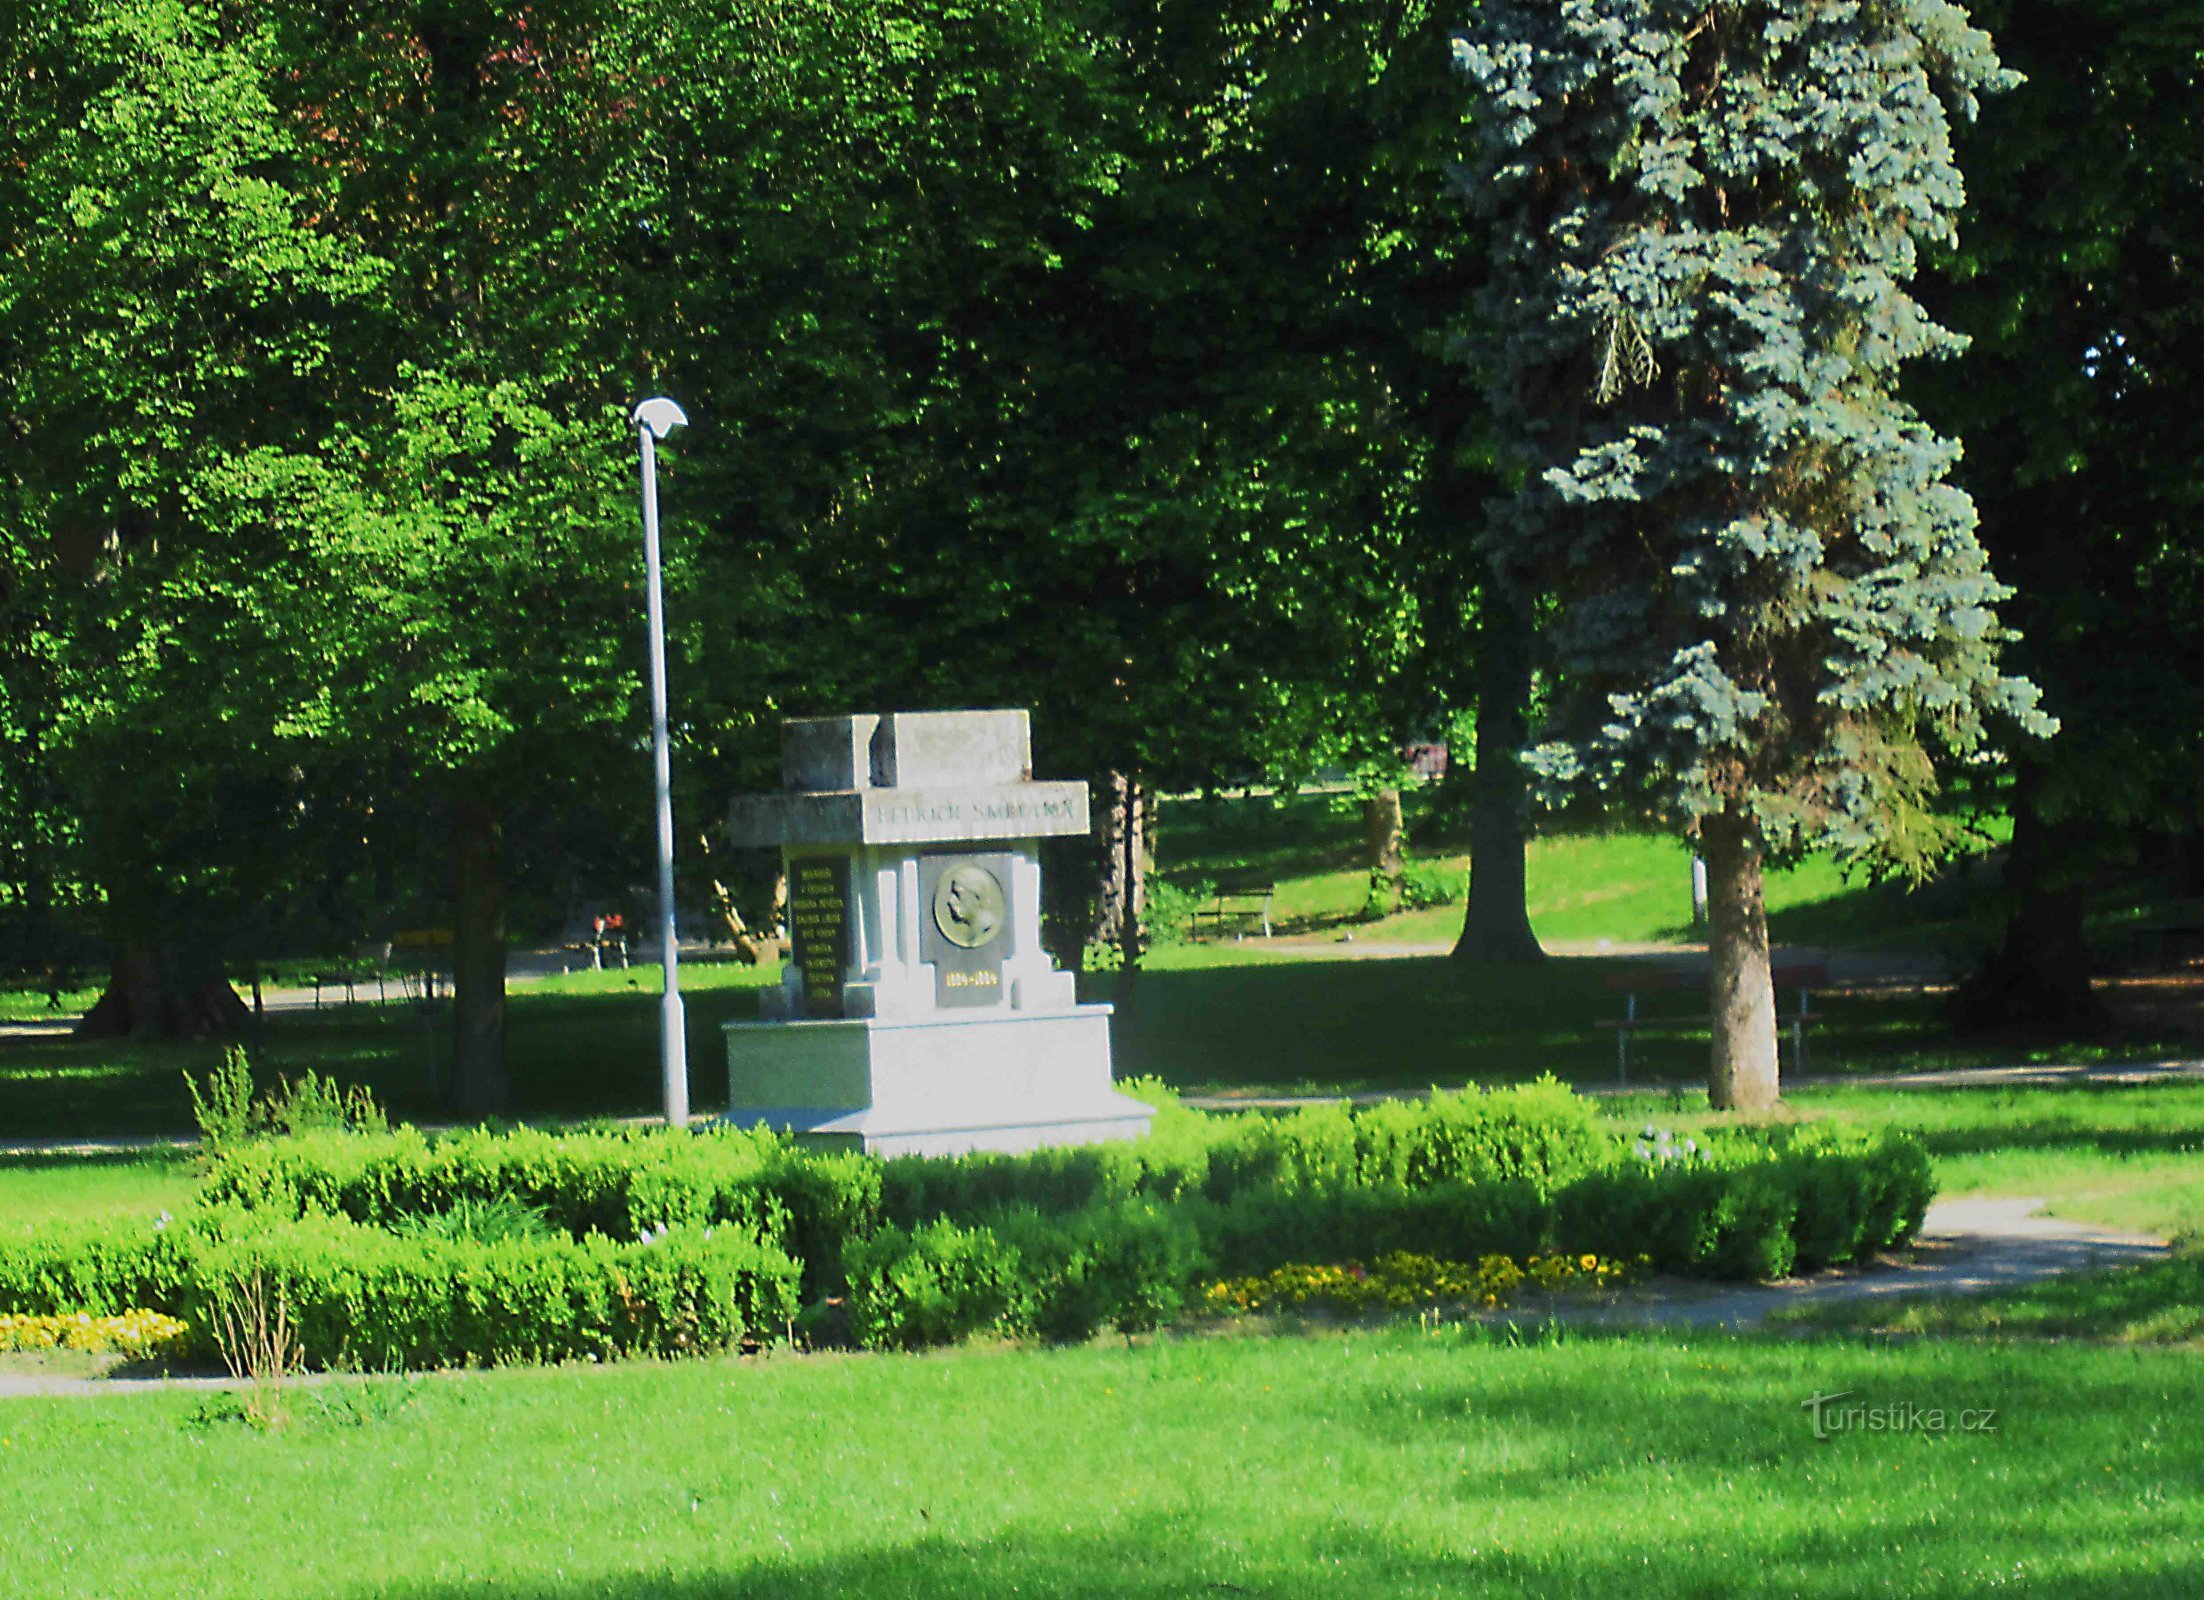 Bedřich Smetana-park in Vyškov